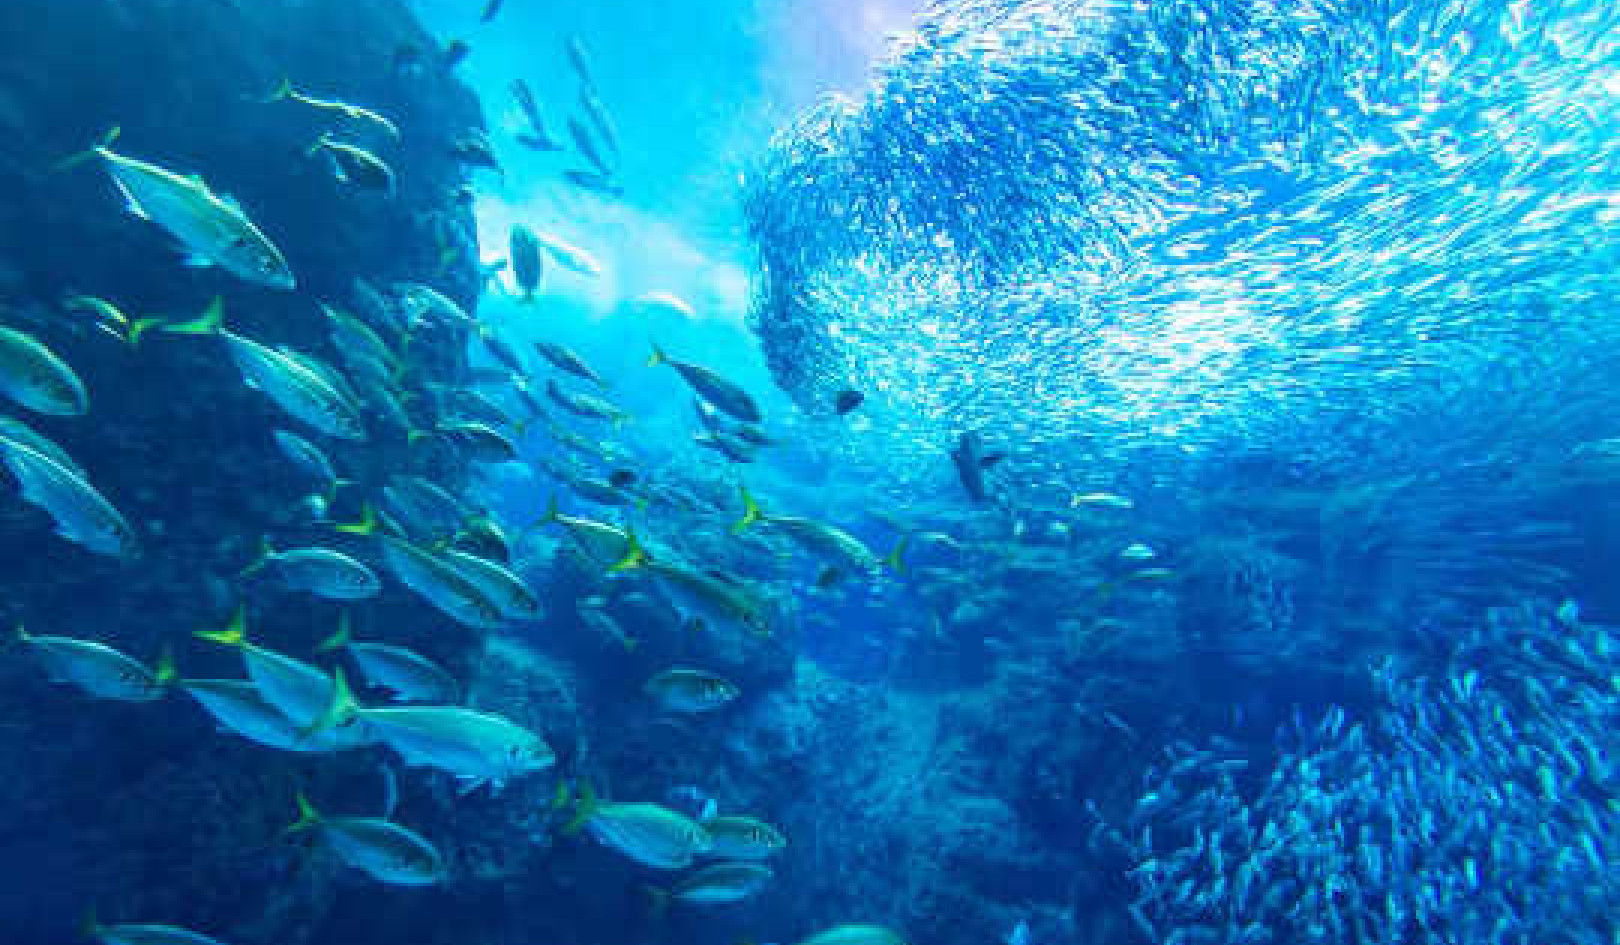 La santé de l'océan dépend de l'économie et de l'idée du poisson infini